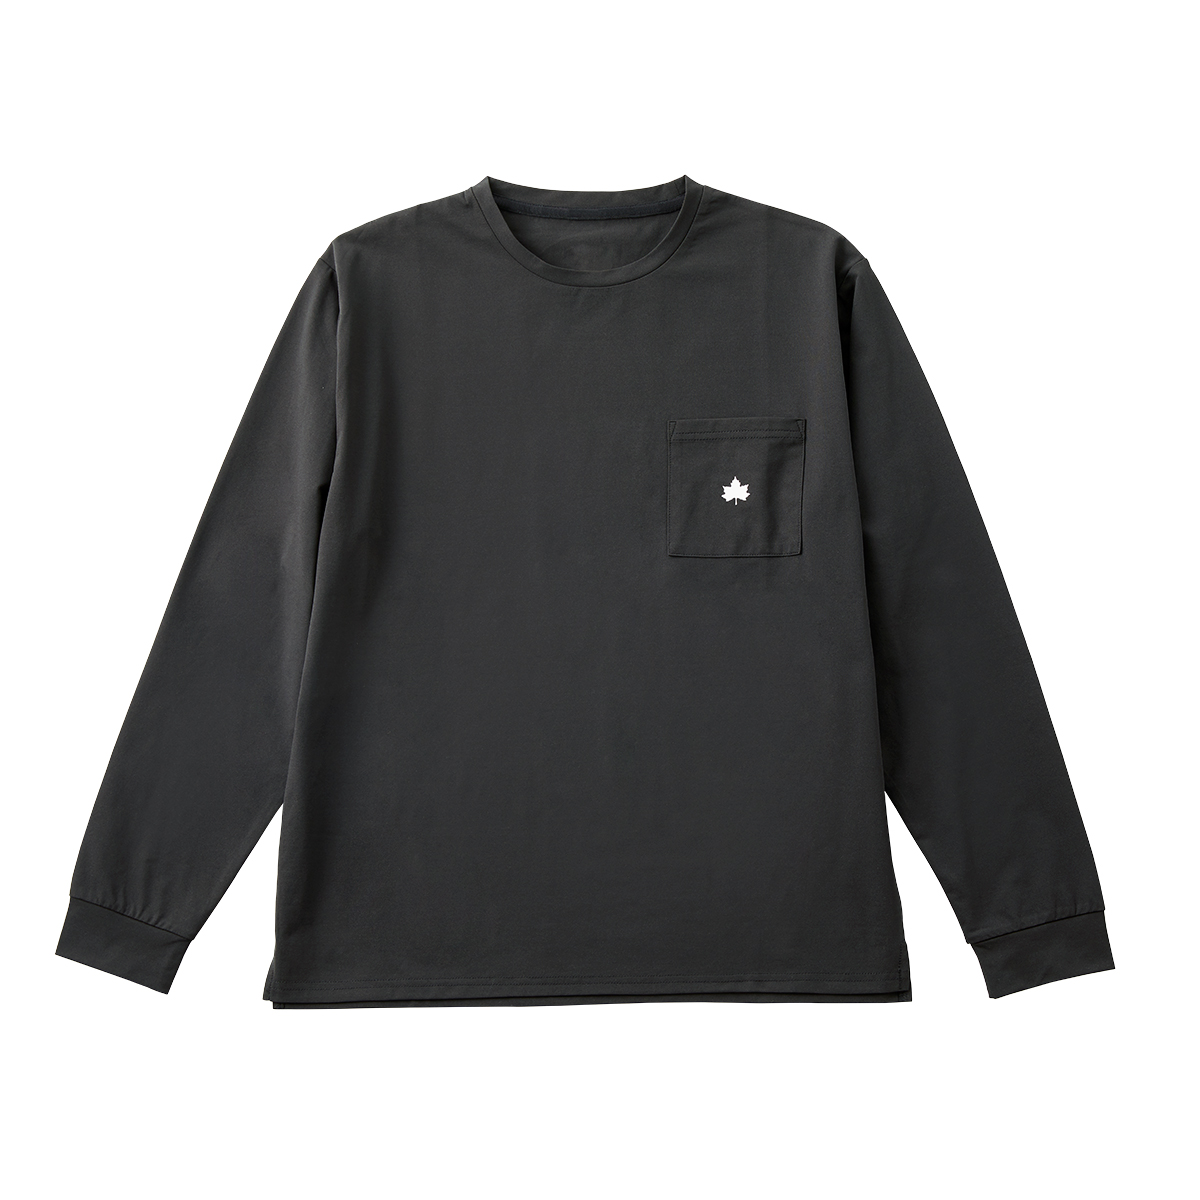 ■LOGOS by Lipner ラウンジロングTシャツ 59207（ブラック・XL）